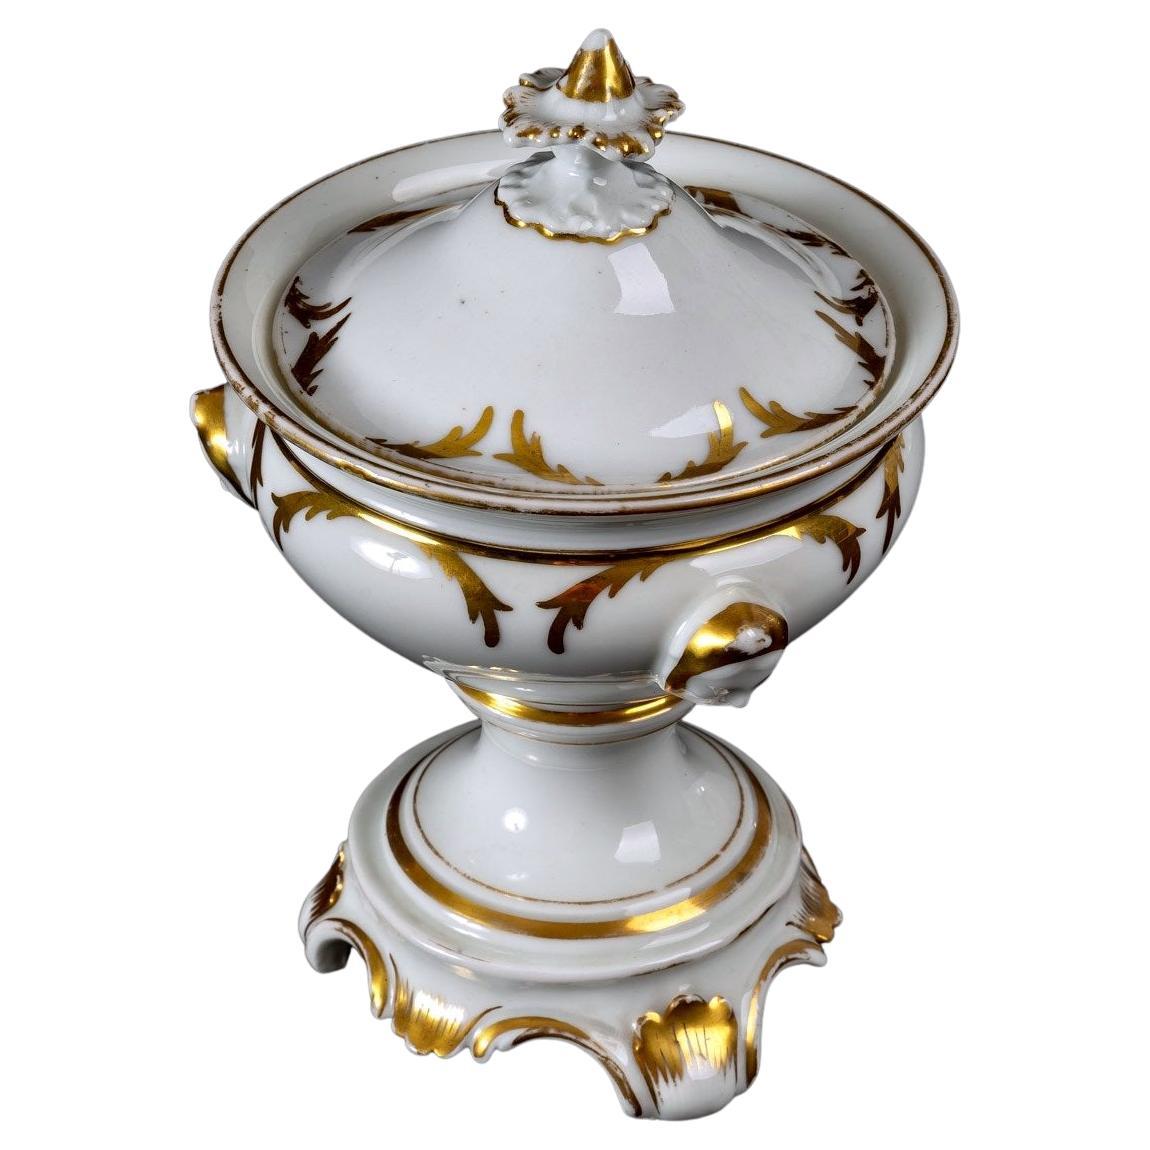 Tripod Fruit Bowl with Lid, Paris Porcelain, 18th Century